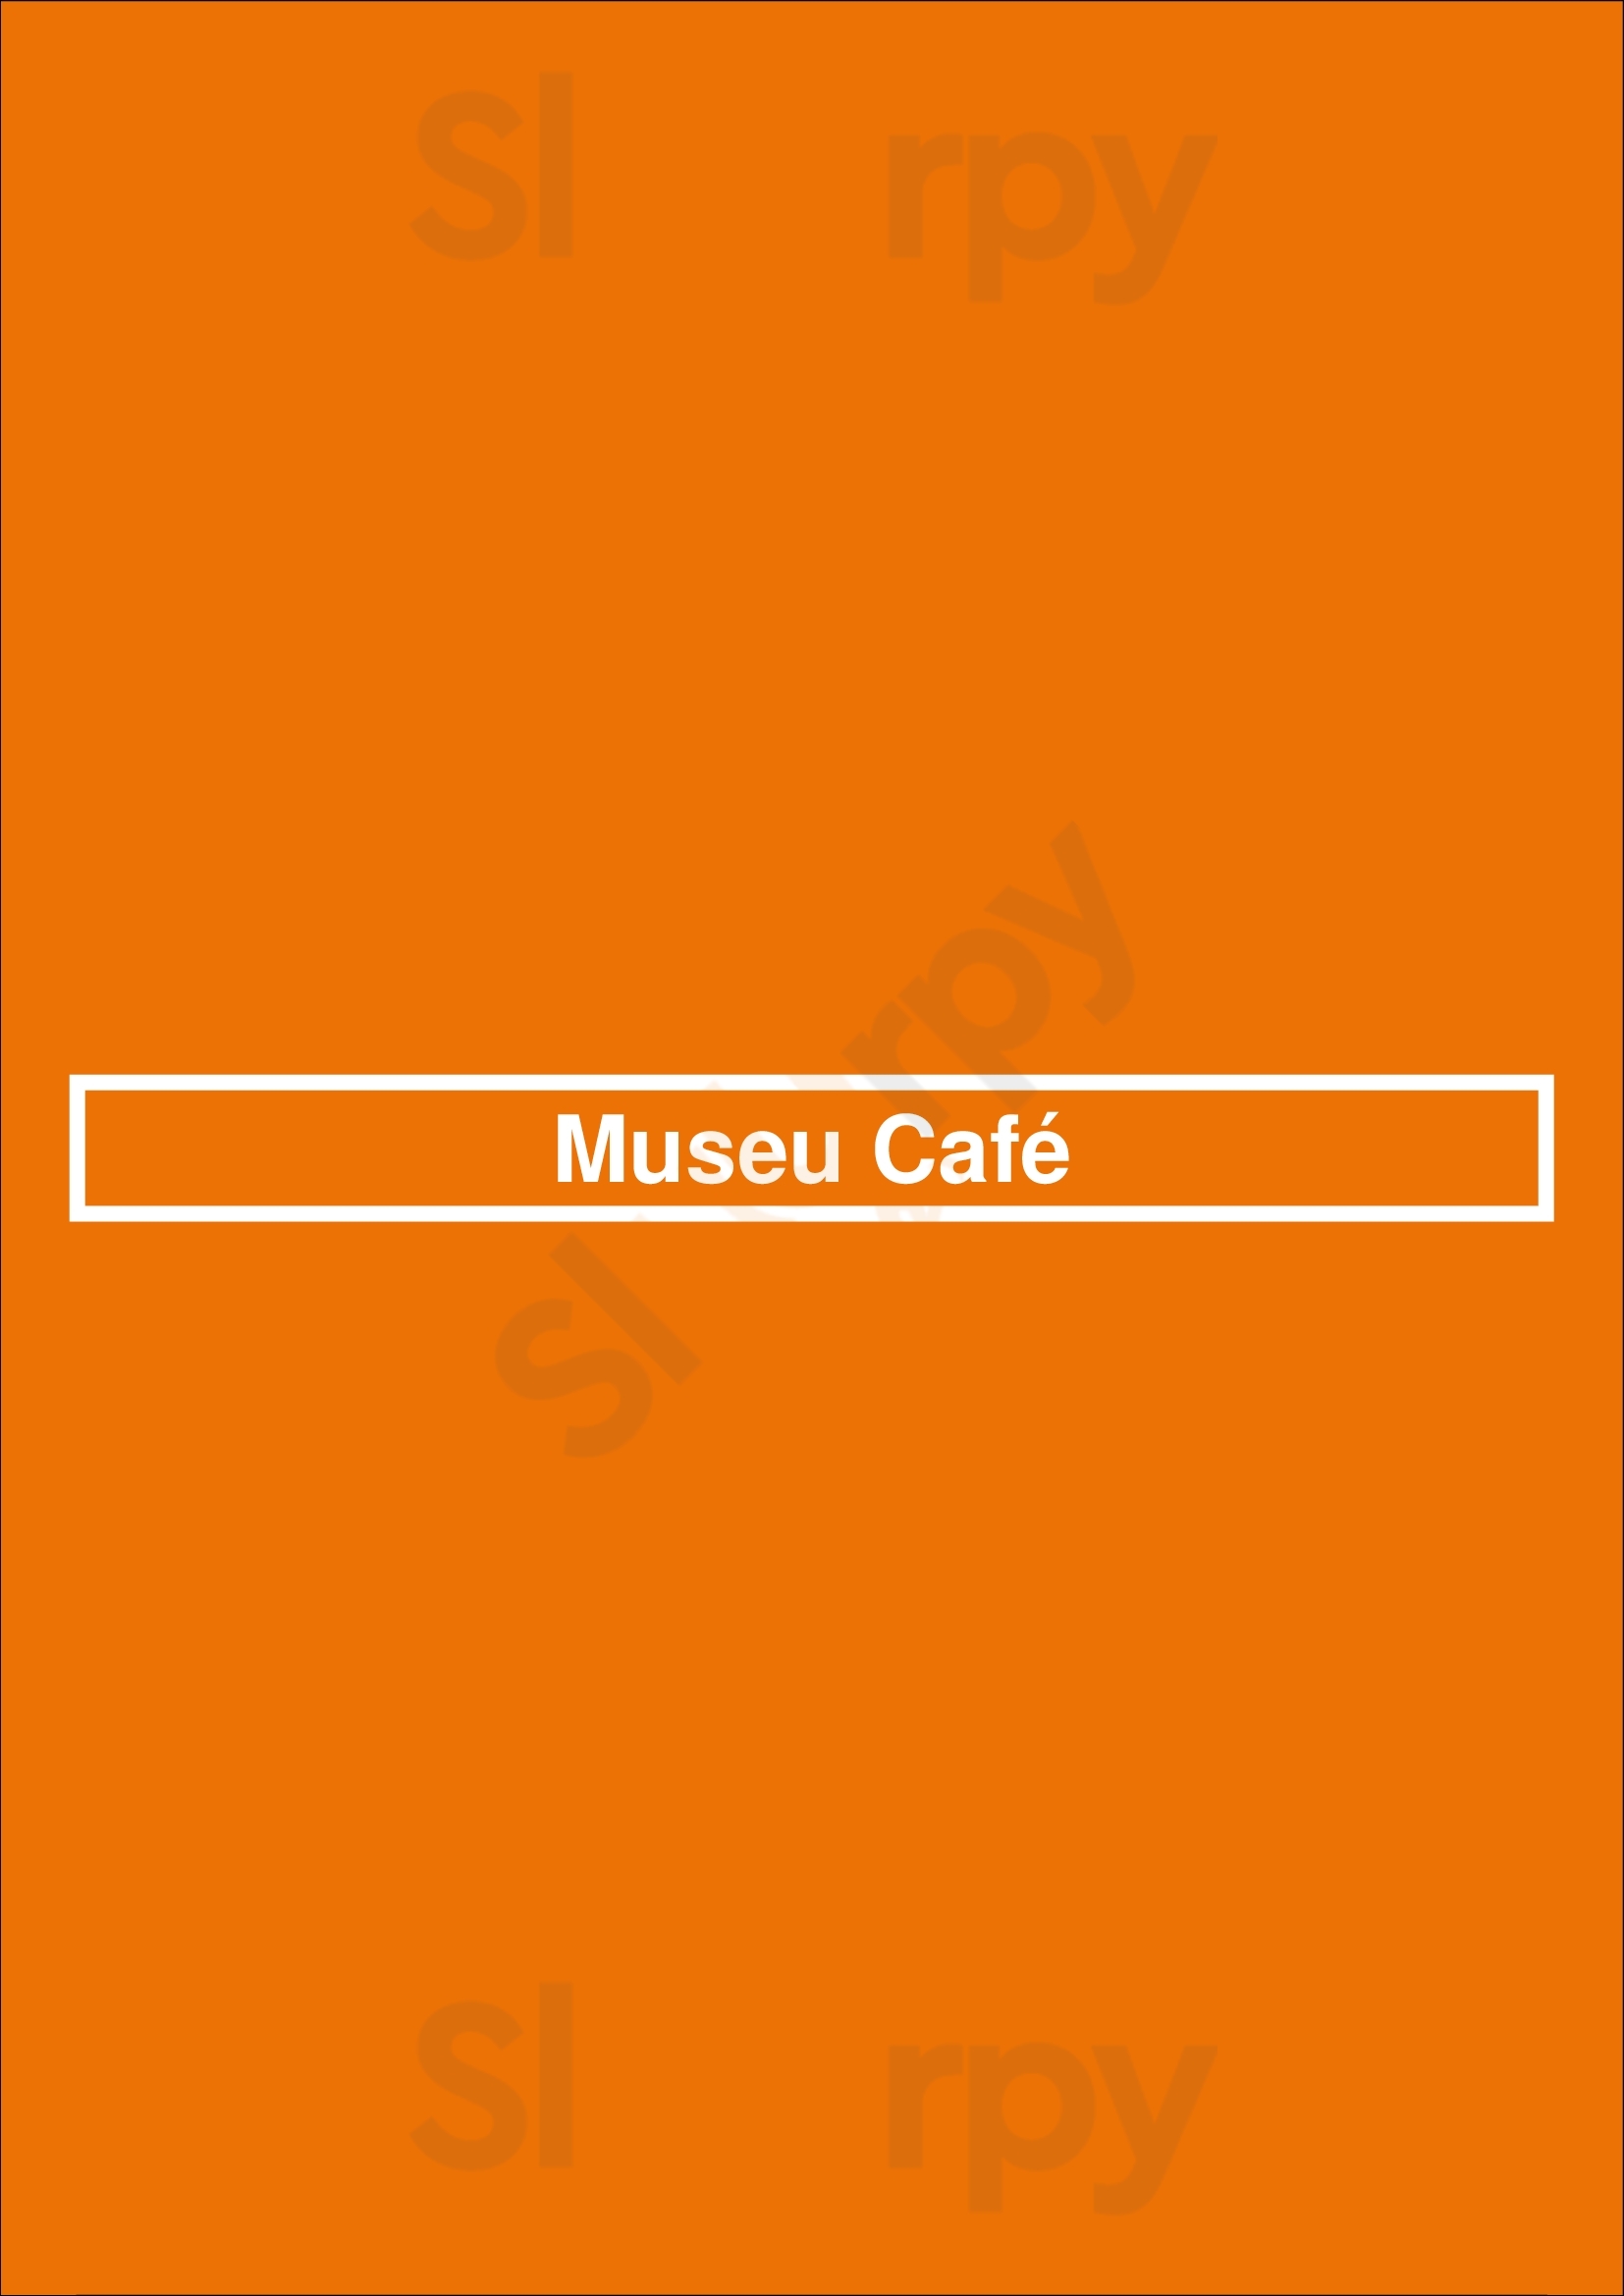 Museu Café Funchal Menu - 1